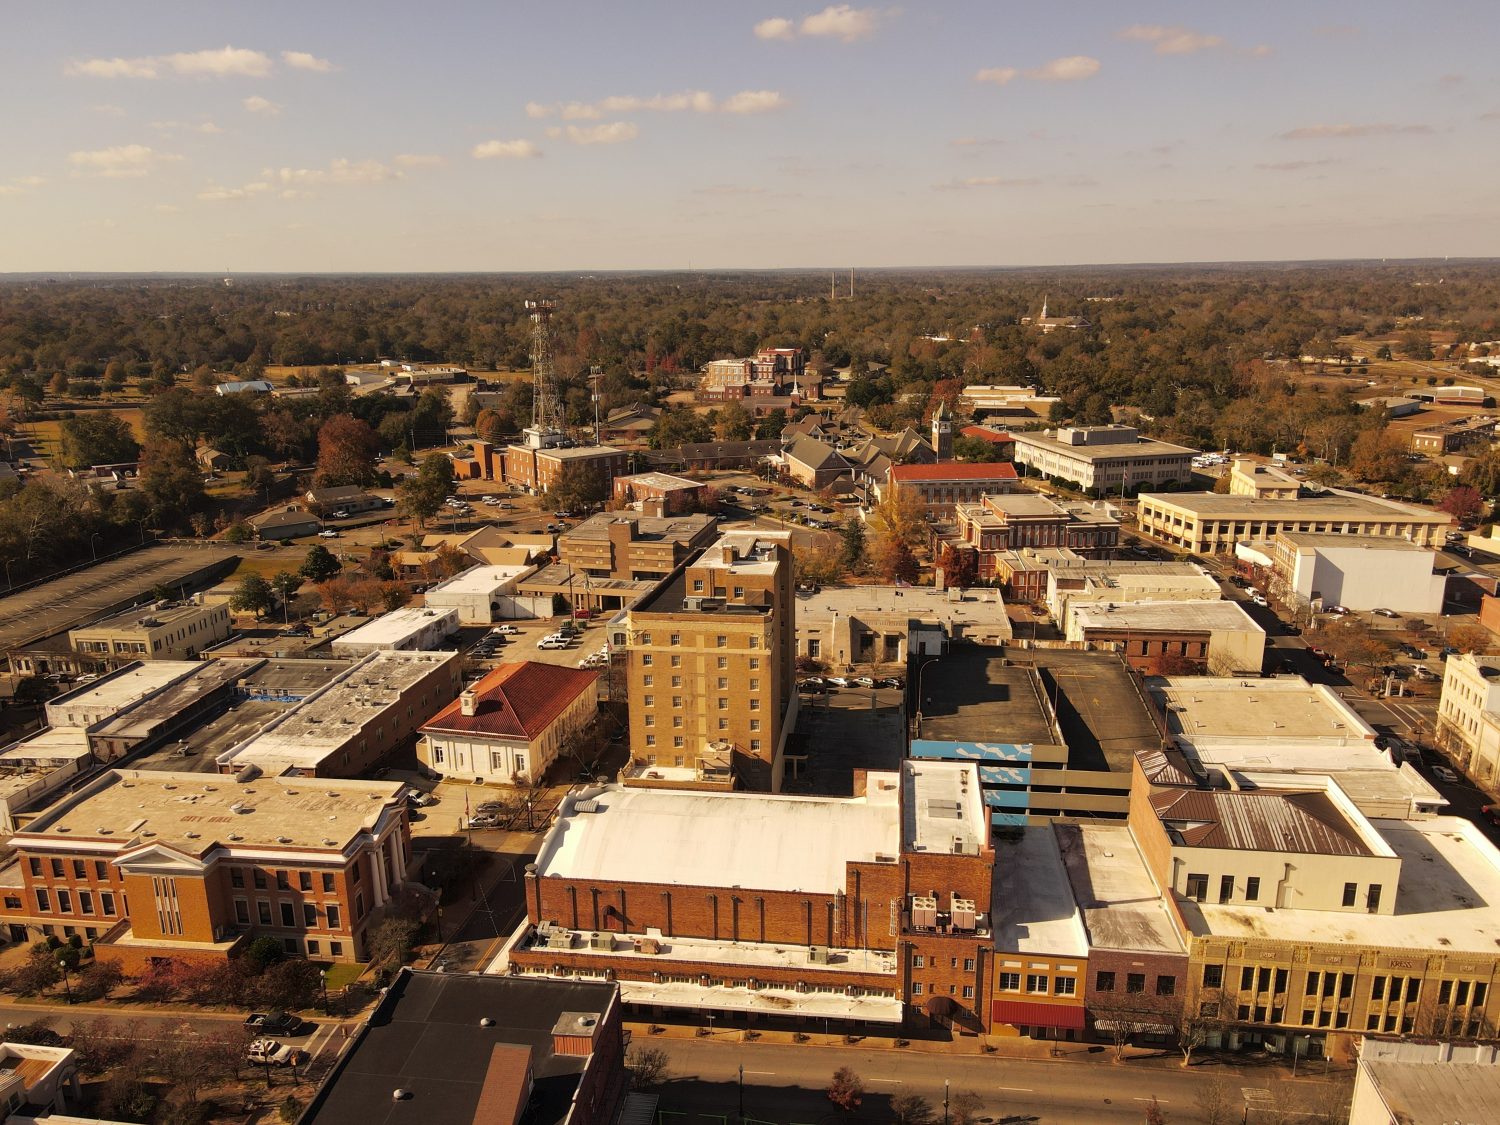 Fotografia Arial del paesaggio urbano del centro di Hattiesburg Mississippi.